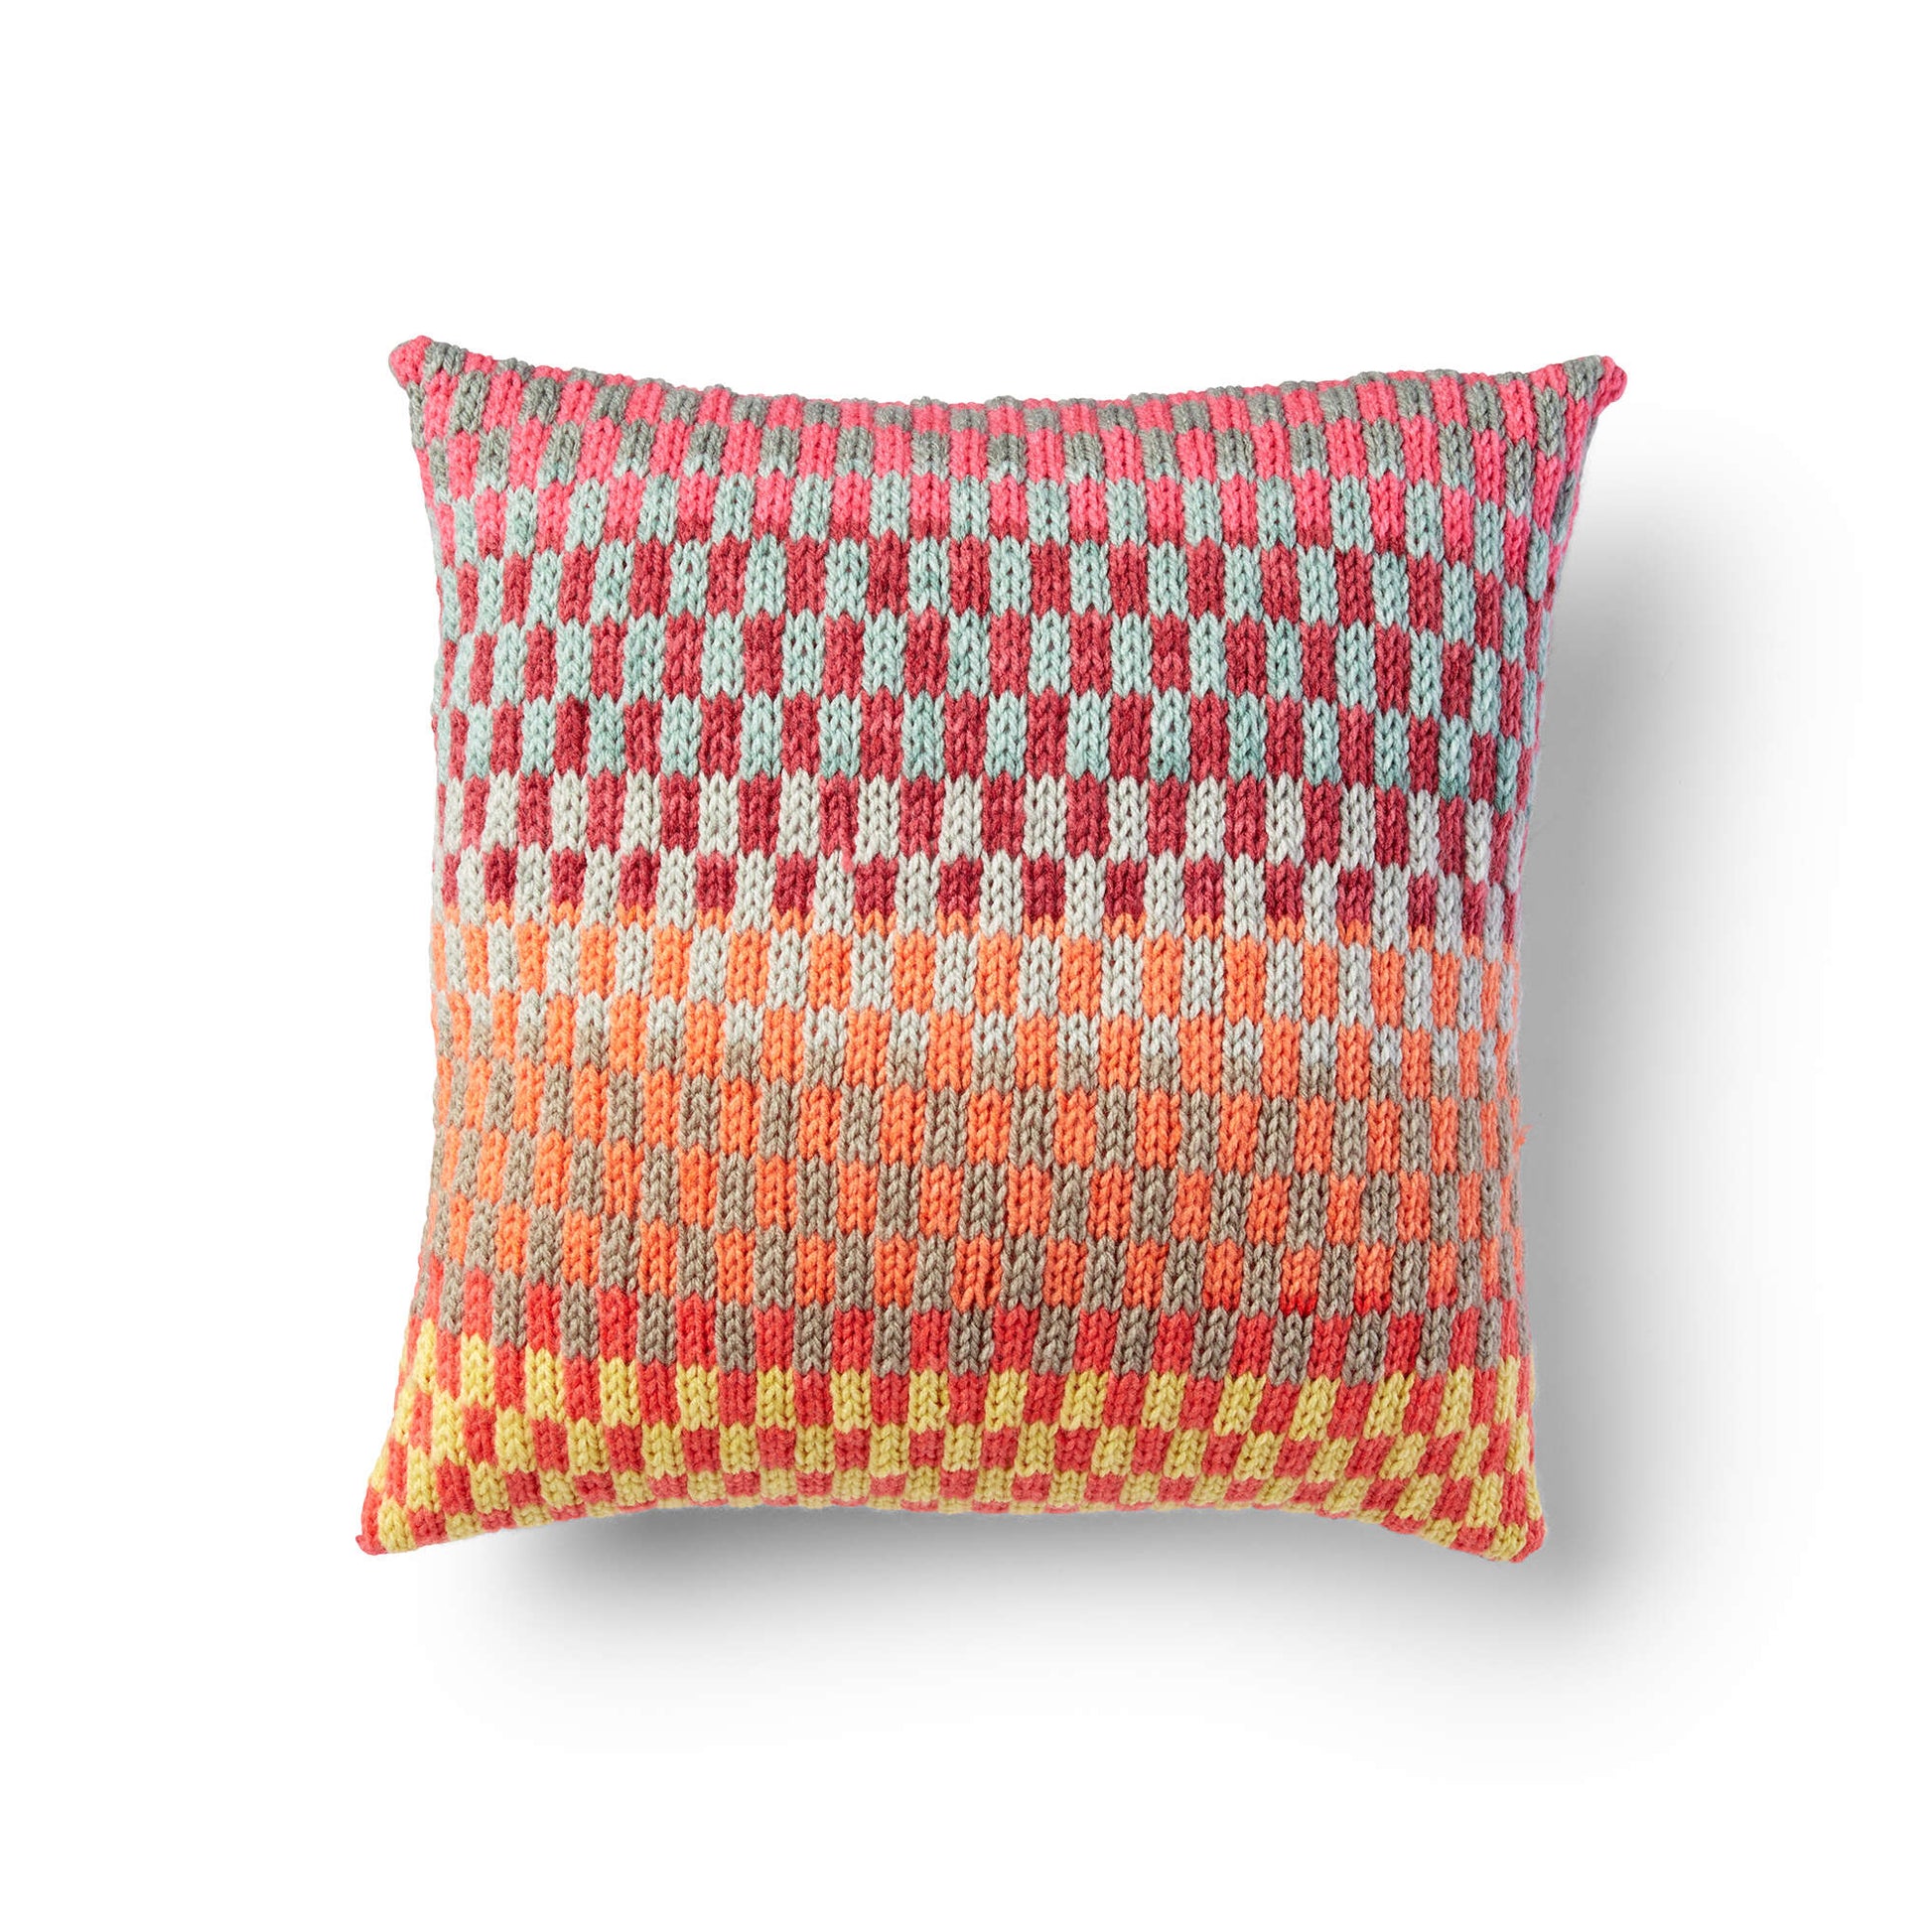 Free Bernat Fantastic Fair Isle Knit Pillow Pattern